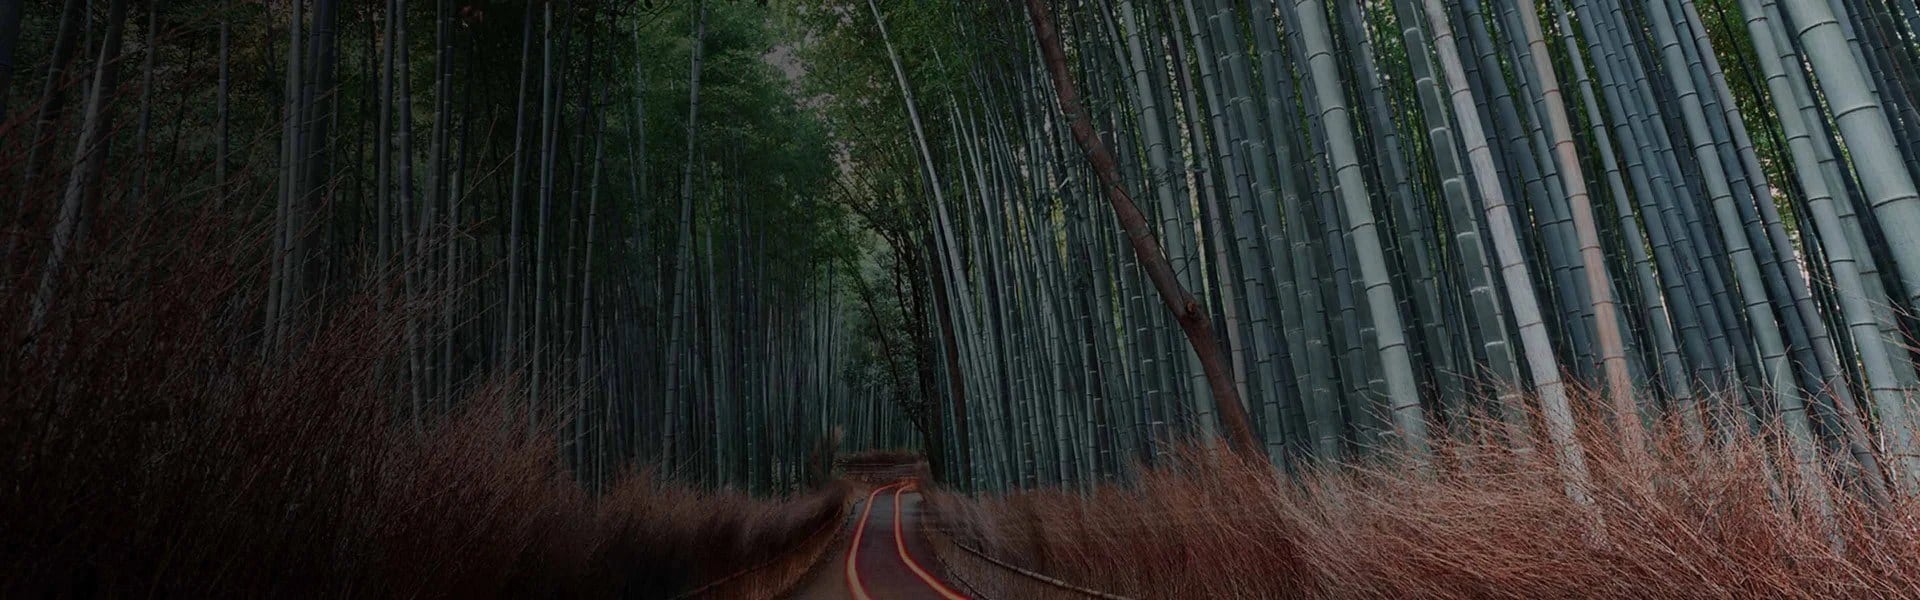 Un chemin de gravel avec une légère traînée et entouré de pousses de bambou